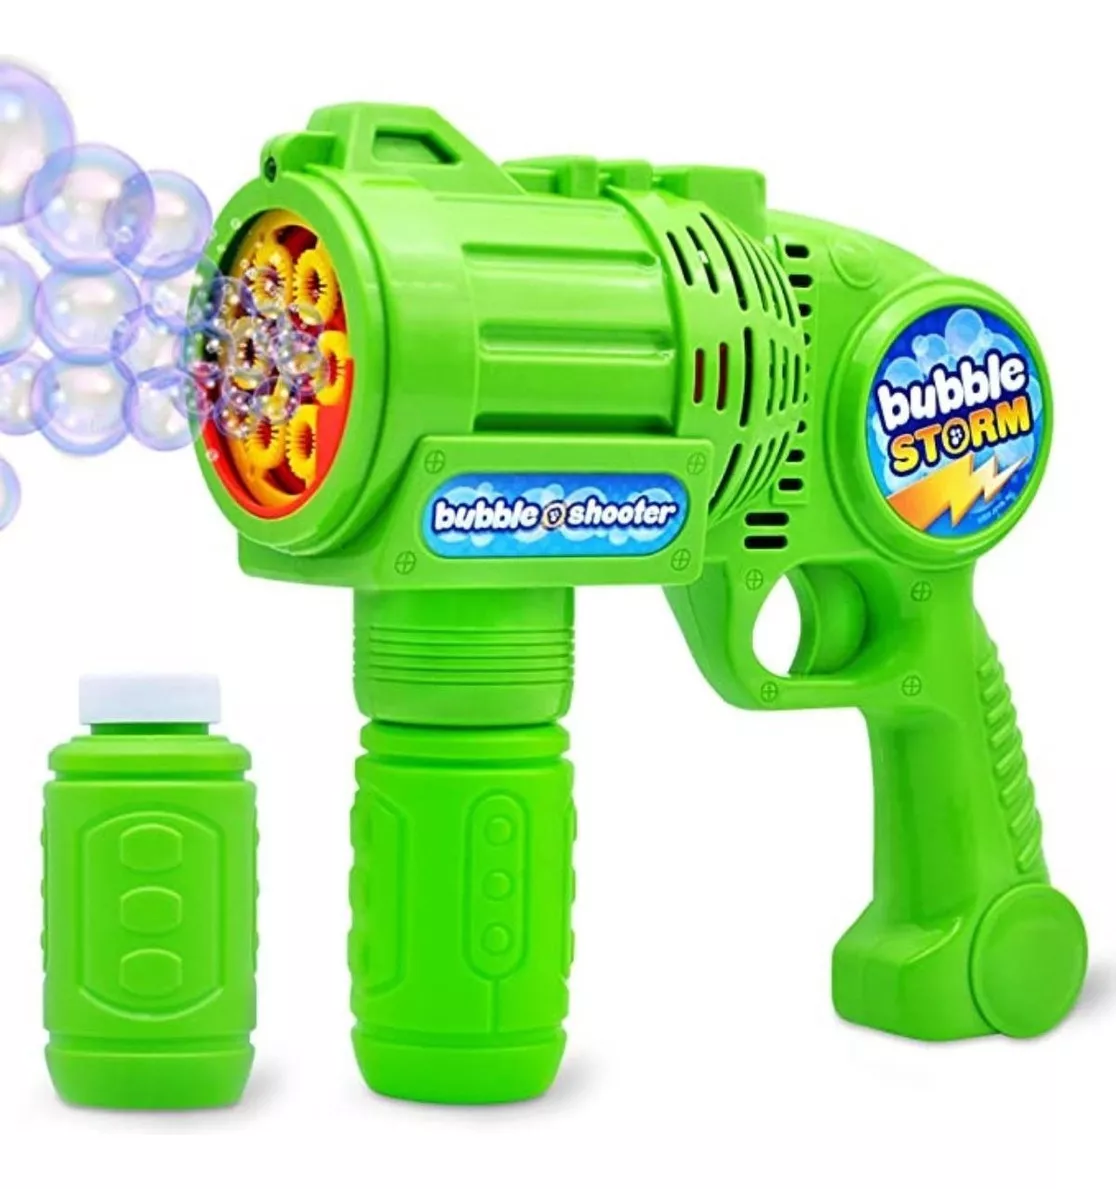 Primera imagen para búsqueda de pistola de burbujas